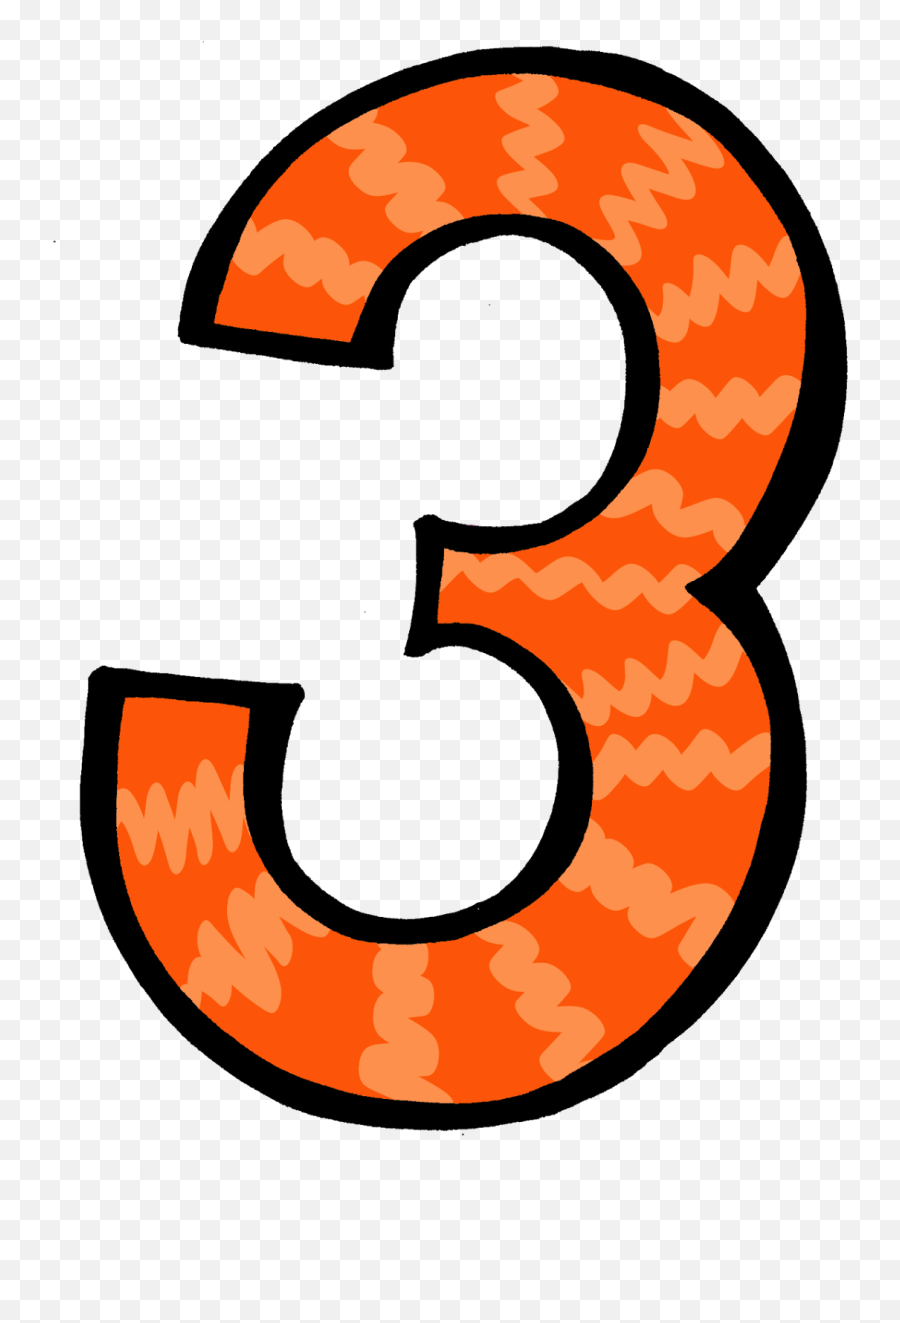 Similiar Orange Number 2 Clip Art - Number 3 Clipart Transparent Background Png,Number 10 Png